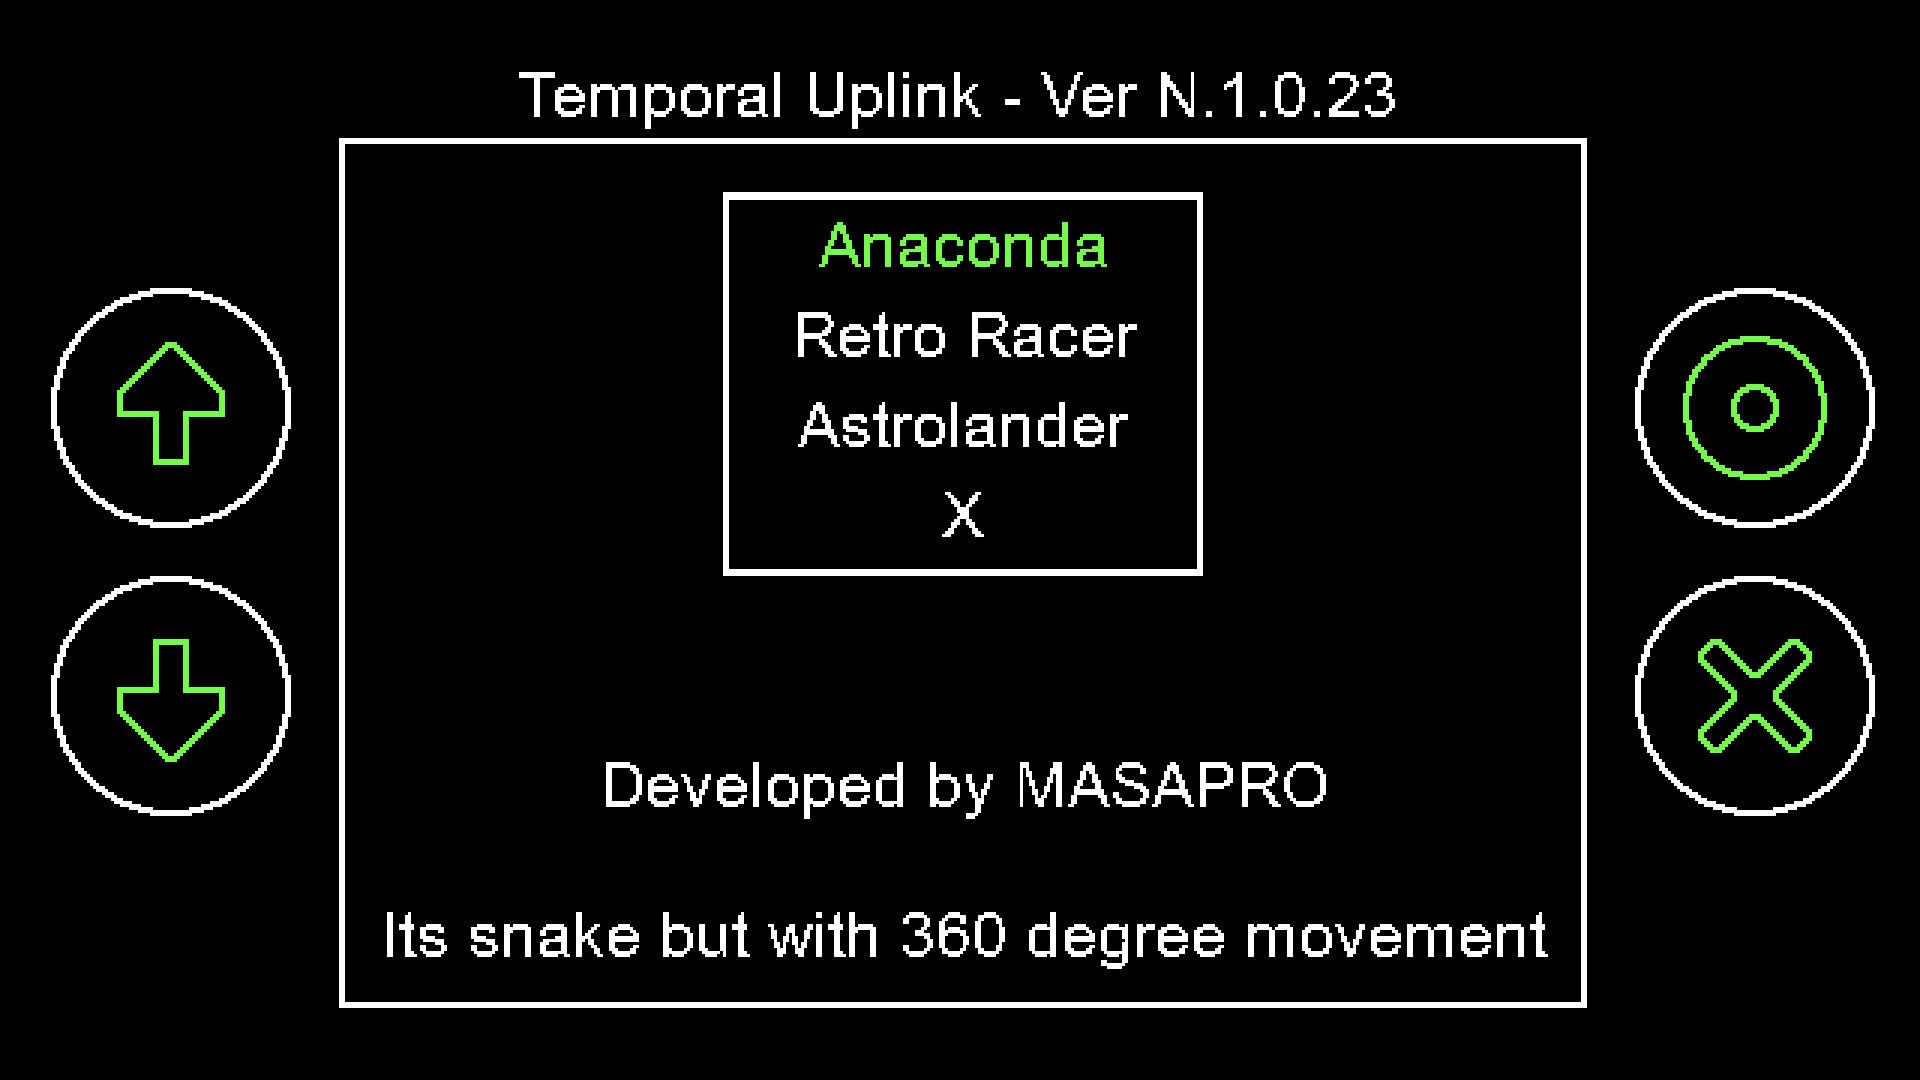 Snake Retro Unblocked